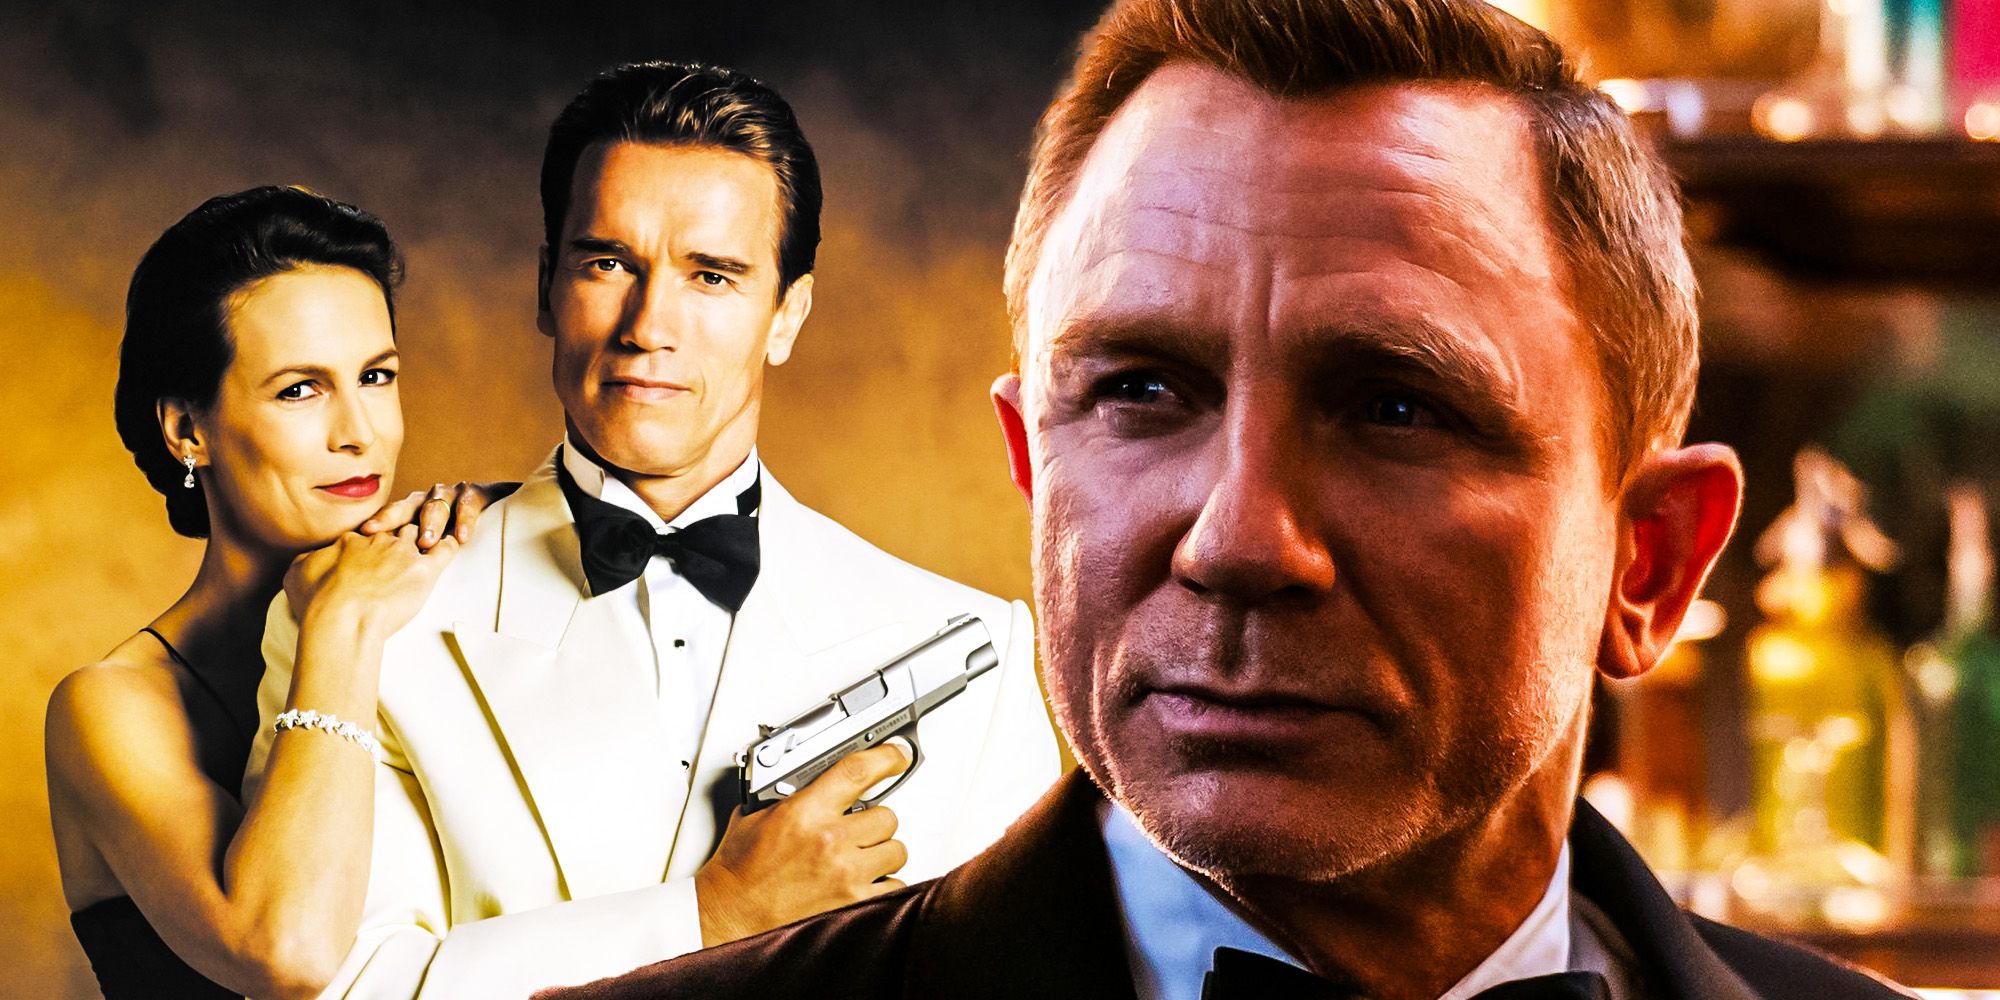 Schwarzenegger respondió a la mayor pregunta de James Bond ¿Qué pasaría si antes de NTTD?